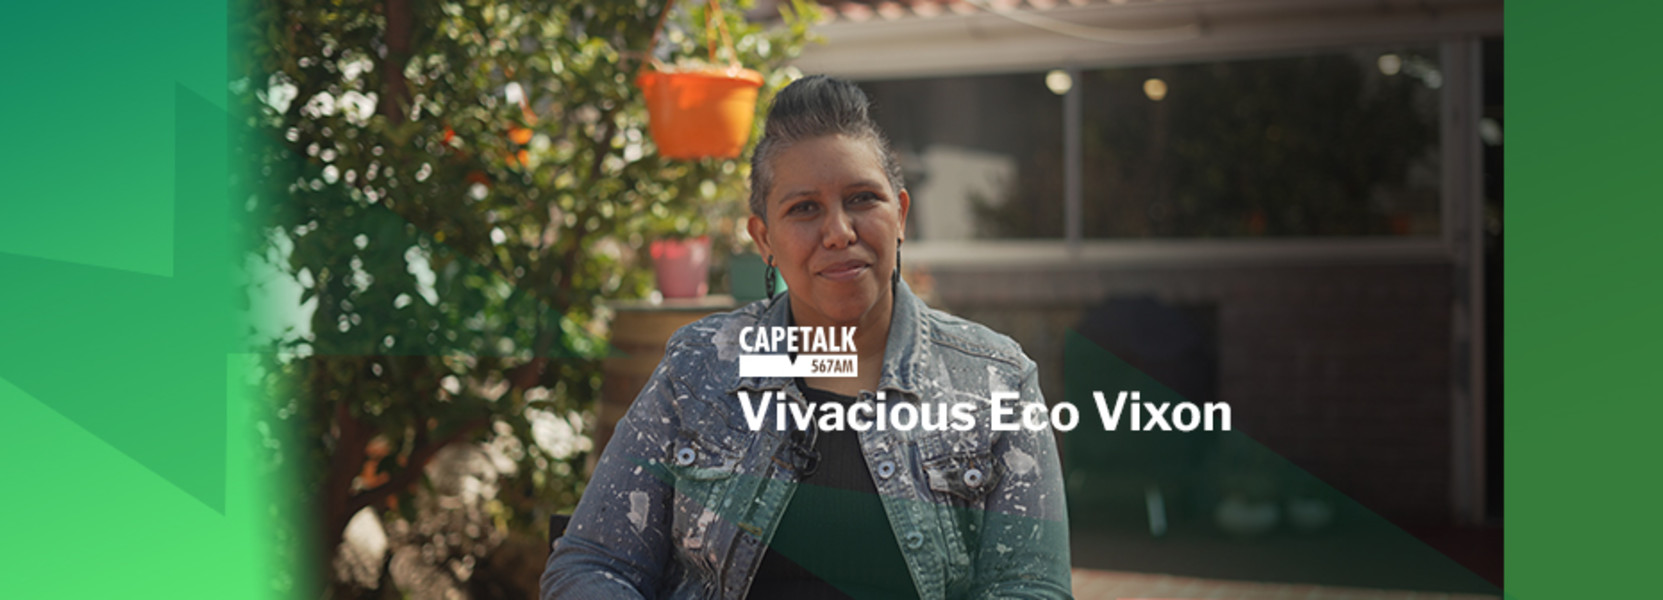 Vivacious Eco Vixon.jpeg